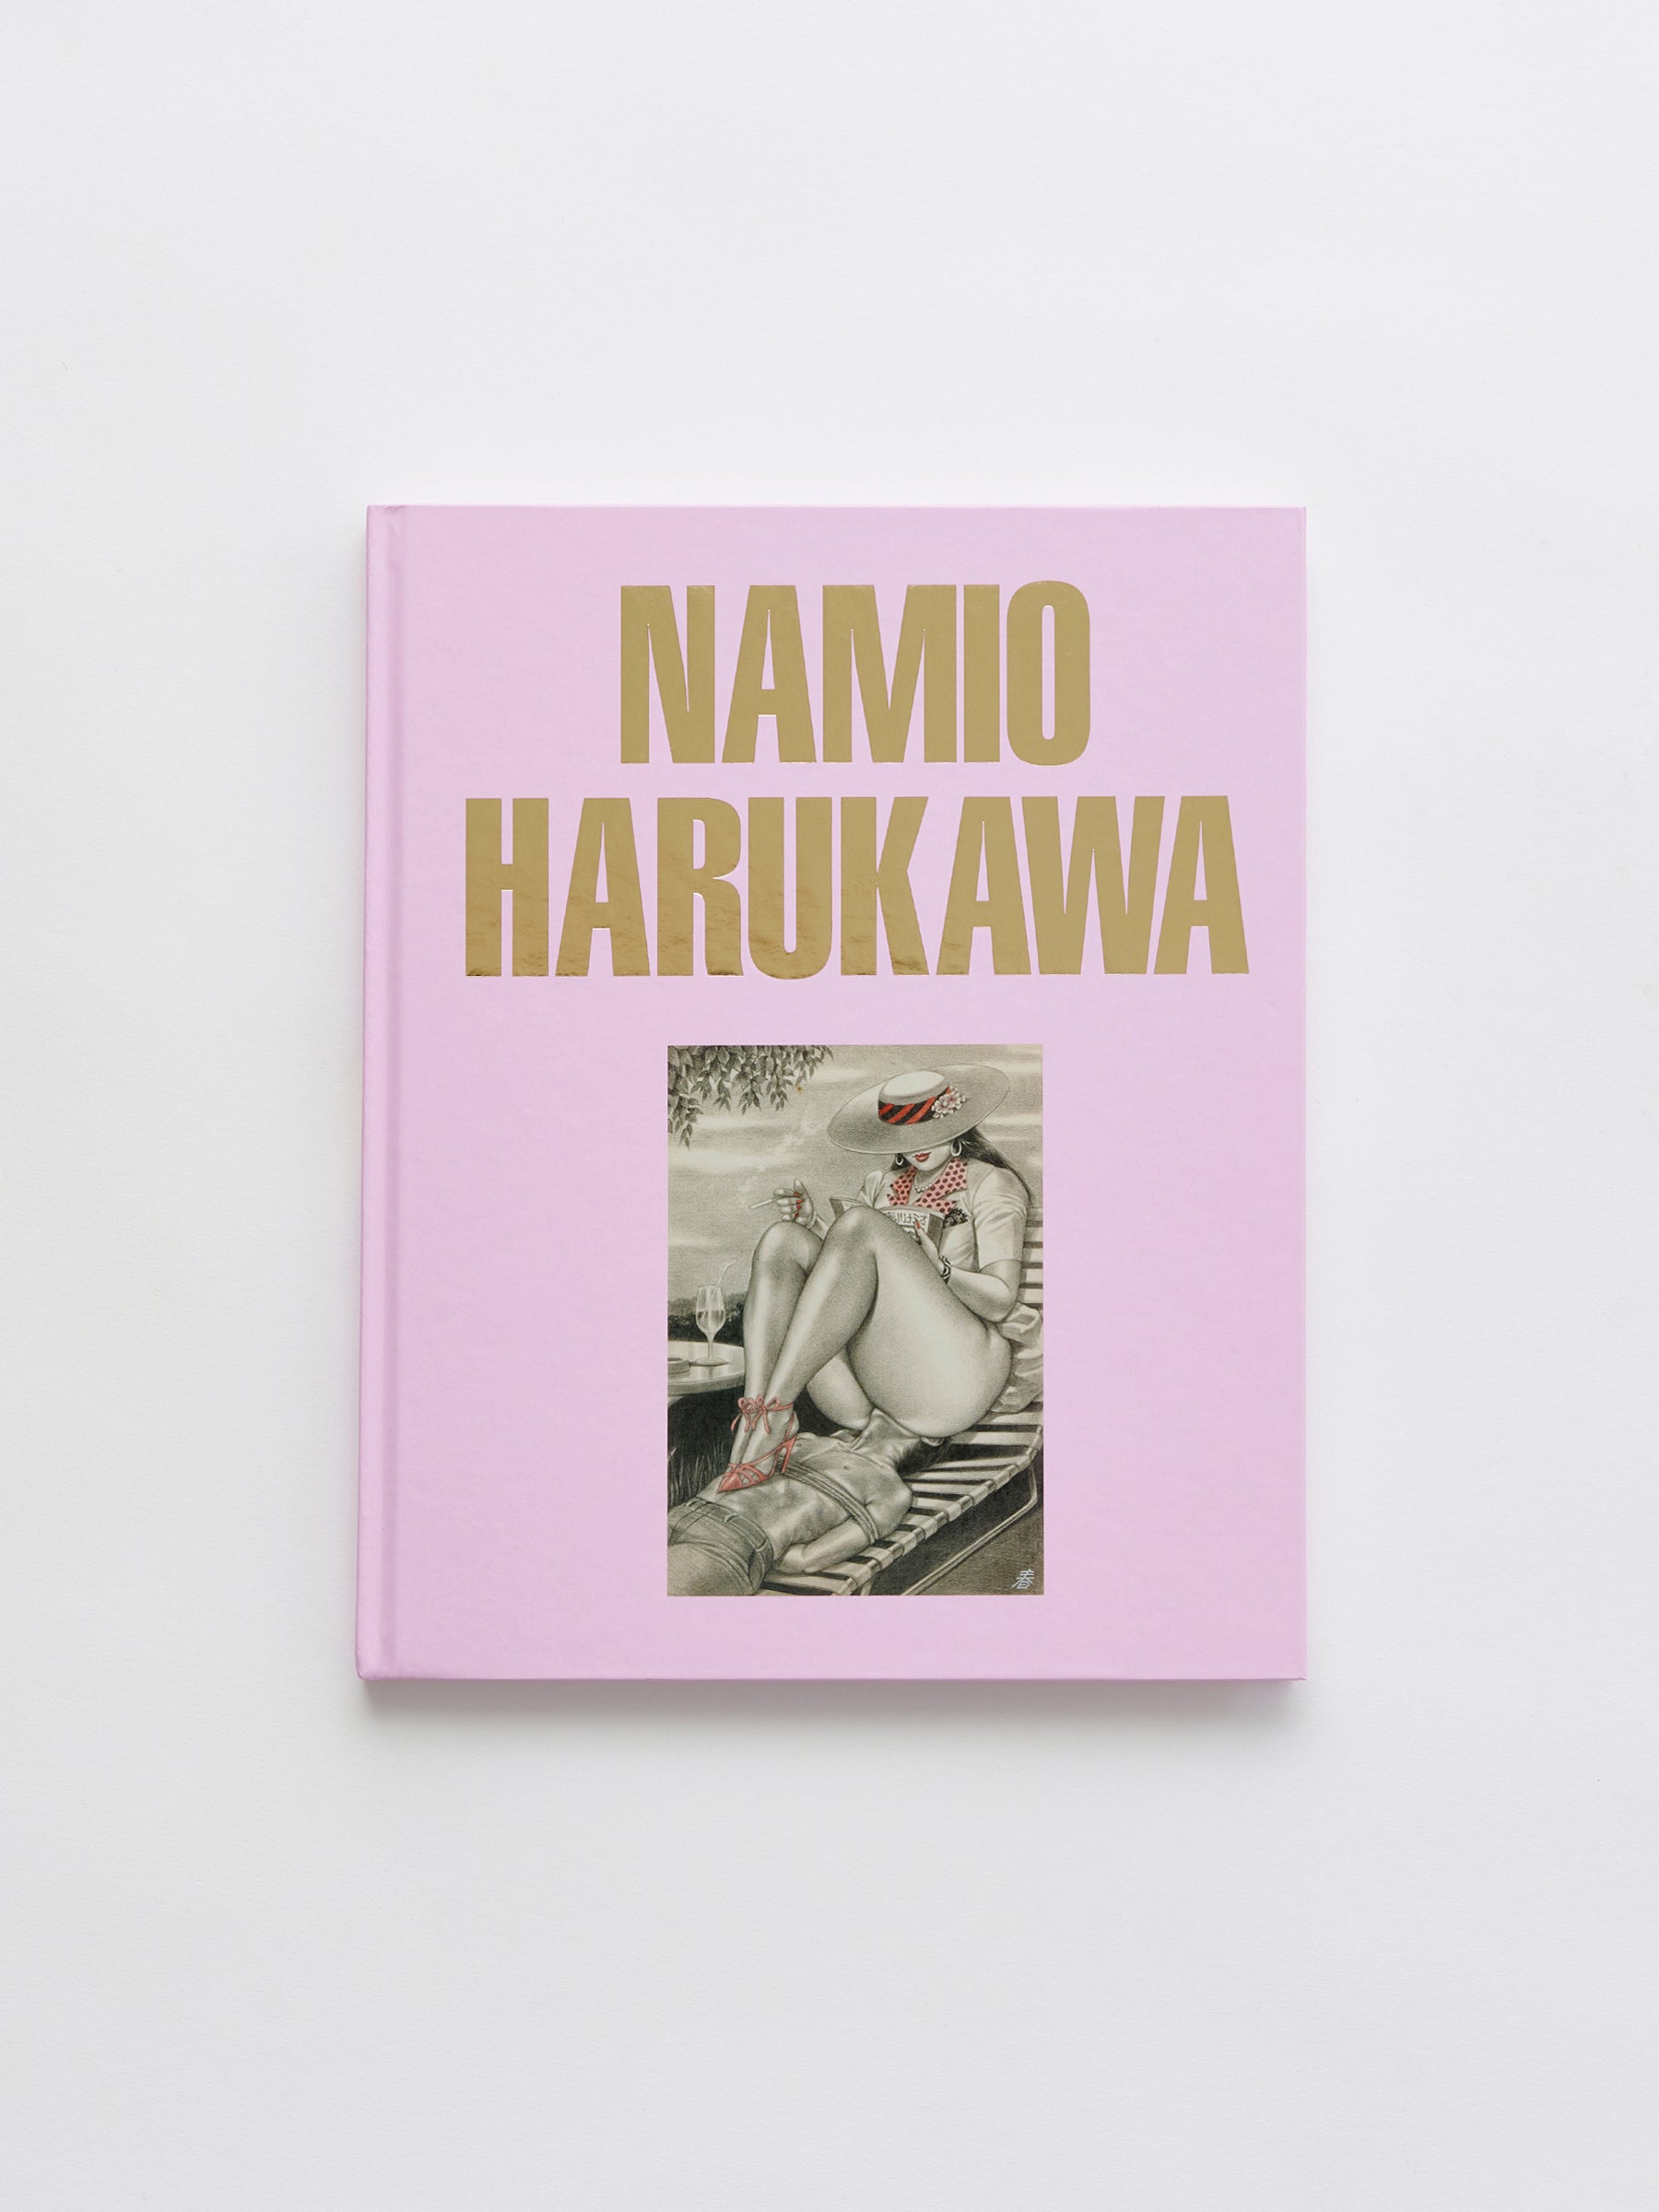 Namio Harukawa Book